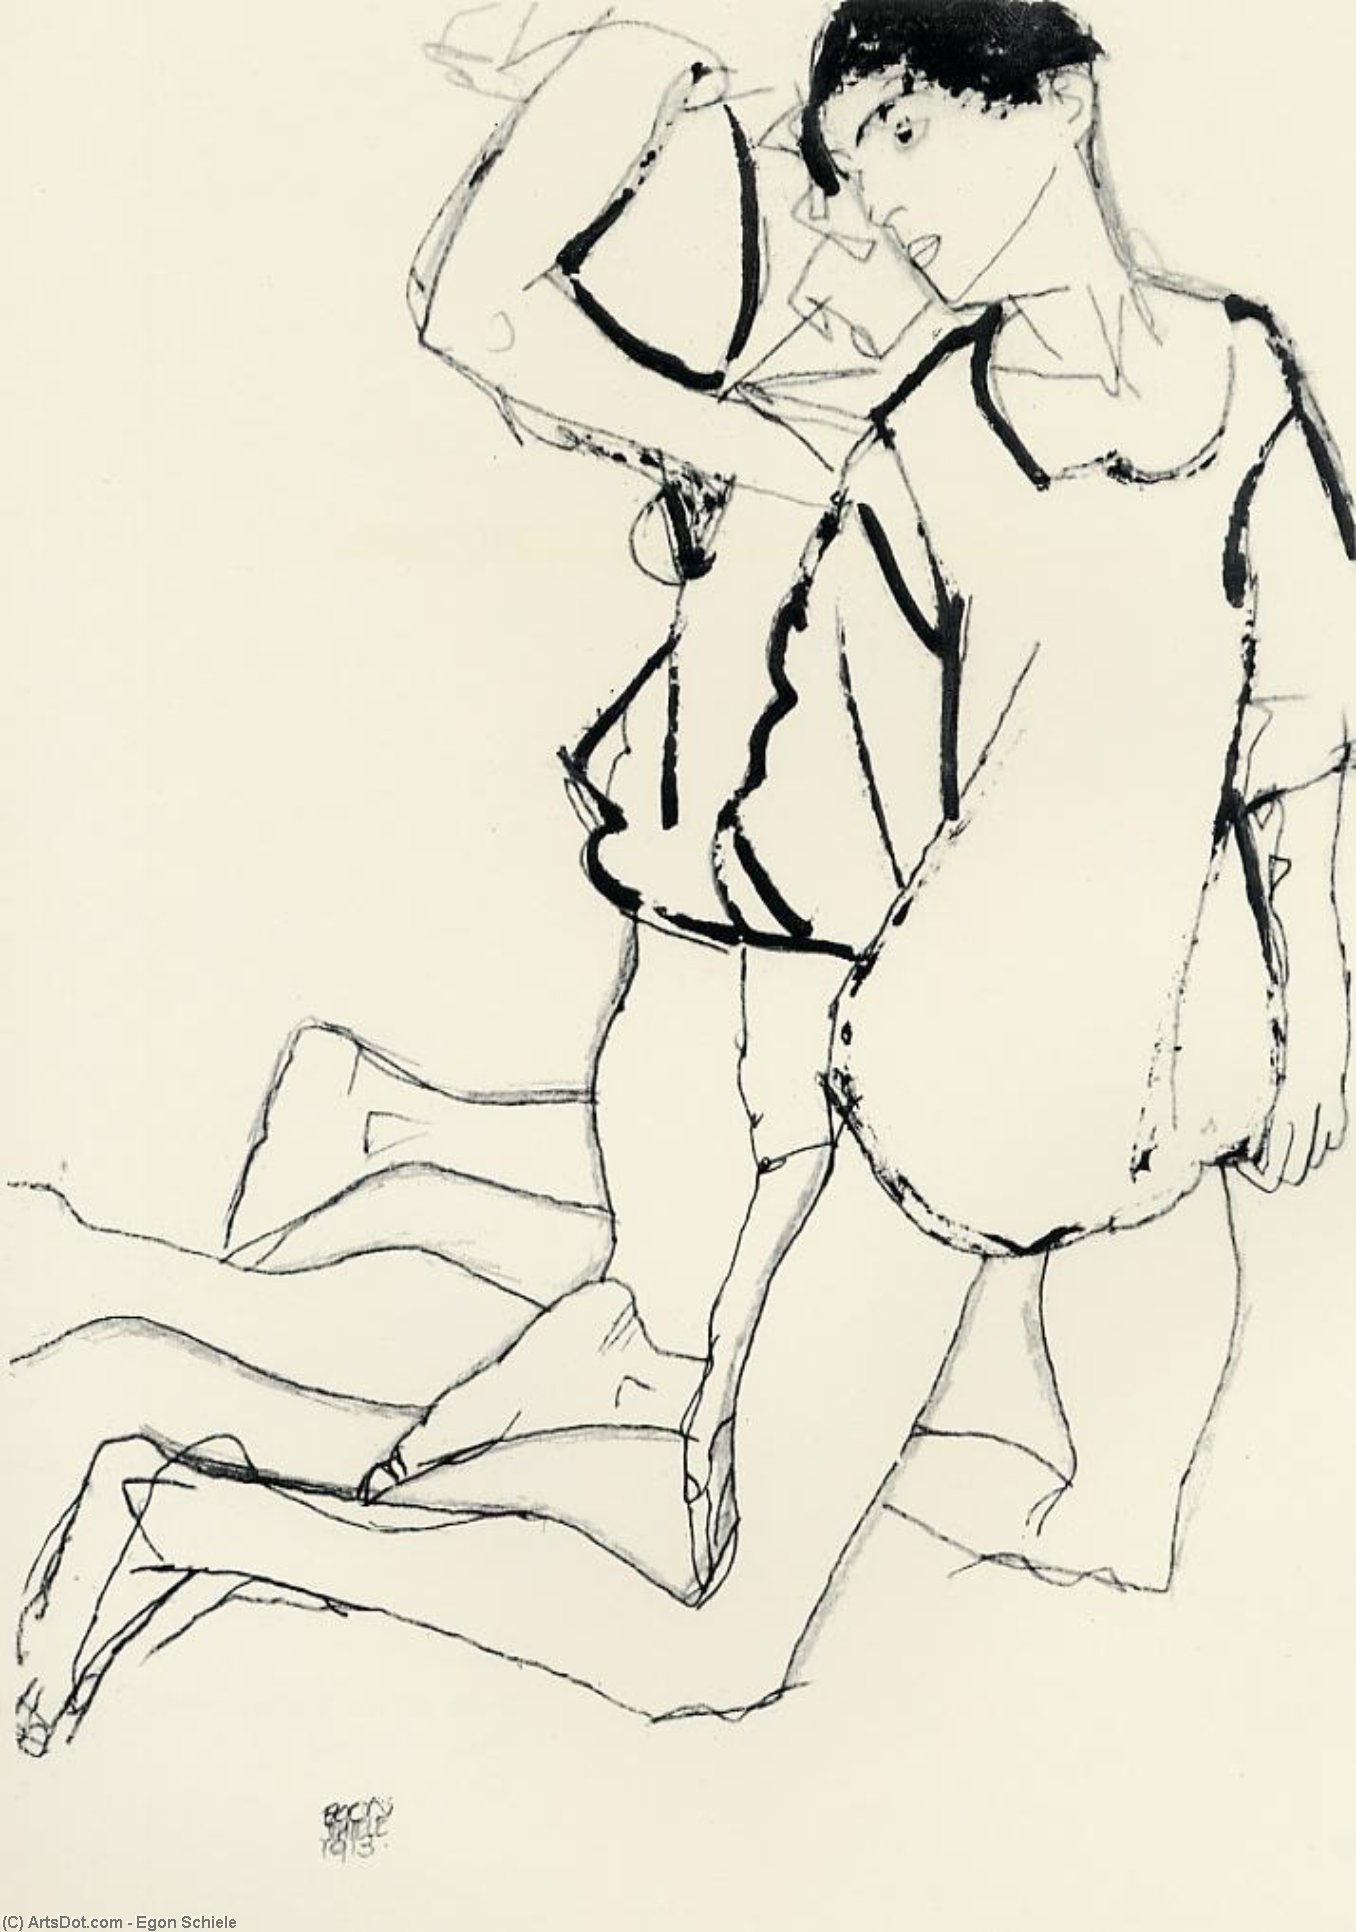 Wikioo.org - Bách khoa toàn thư về mỹ thuật - Vẽ tranh, Tác phẩm nghệ thuật Egon Schiele - Two Kneeling Figures (also known as Parallelogram)